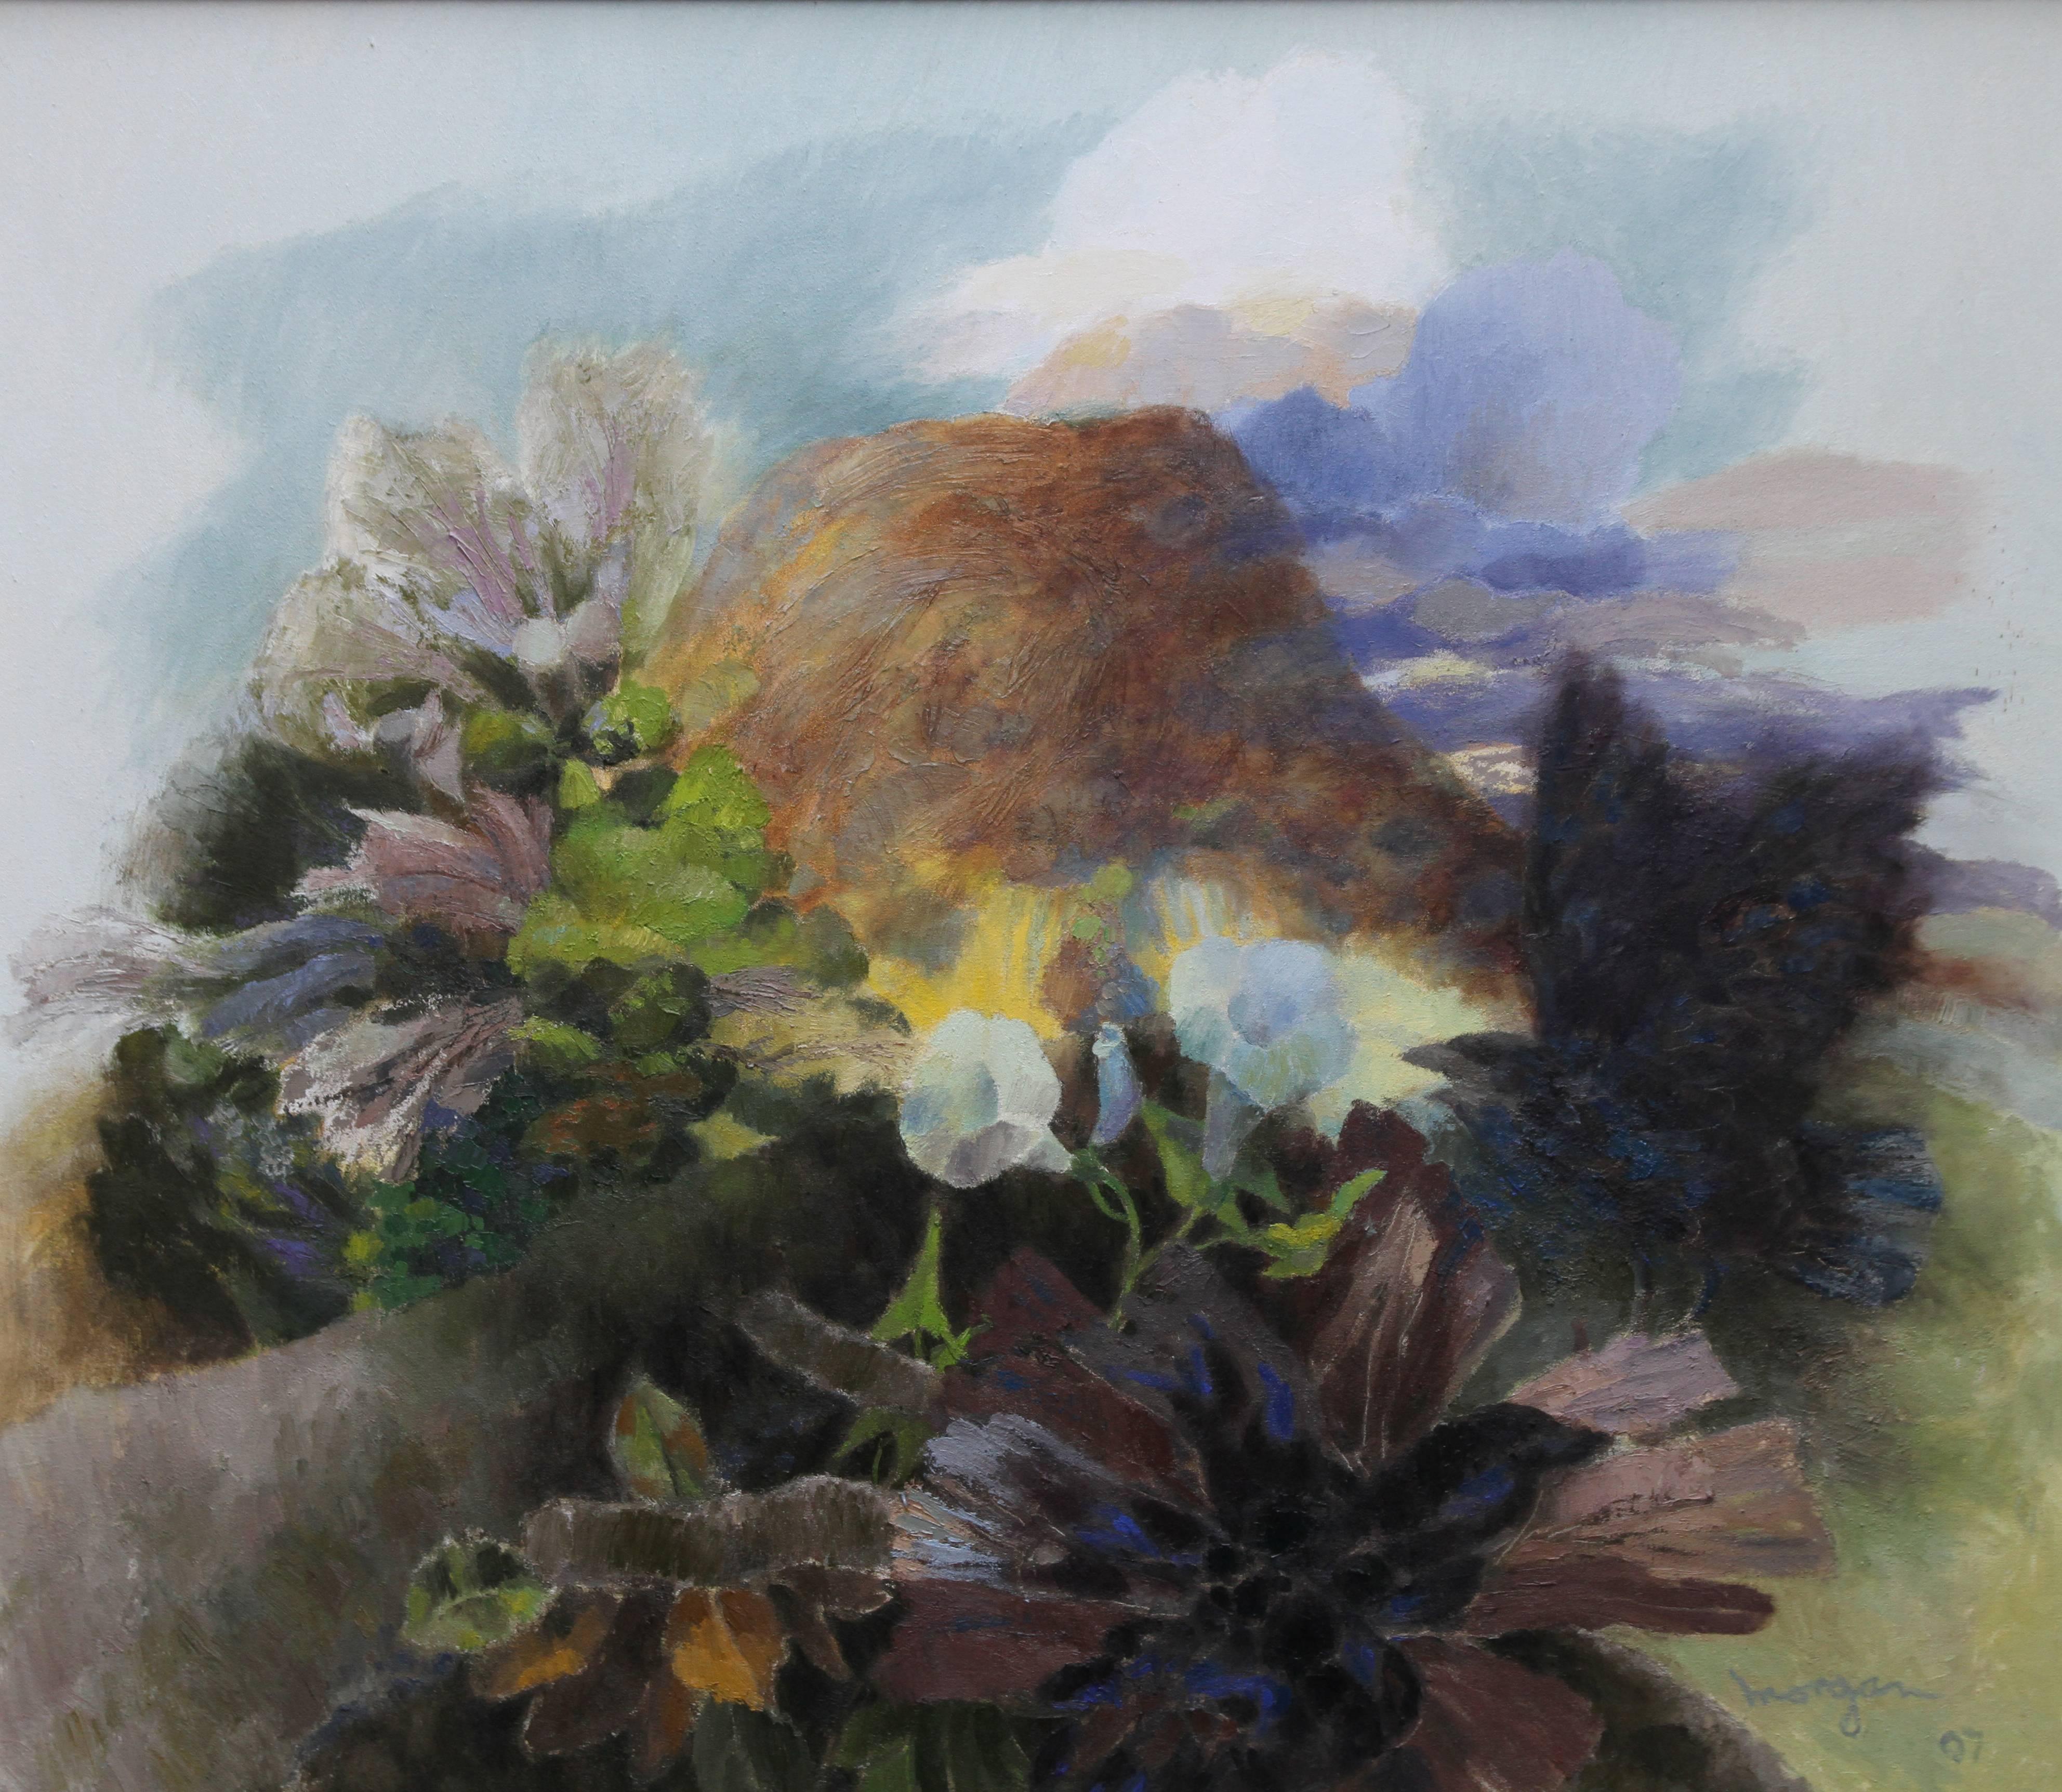 Landscape Painting Glyn Morgan - Paysage avec oiseaux gigognes - Peinture à l'huile abstraite galloise - Paysage de campagne